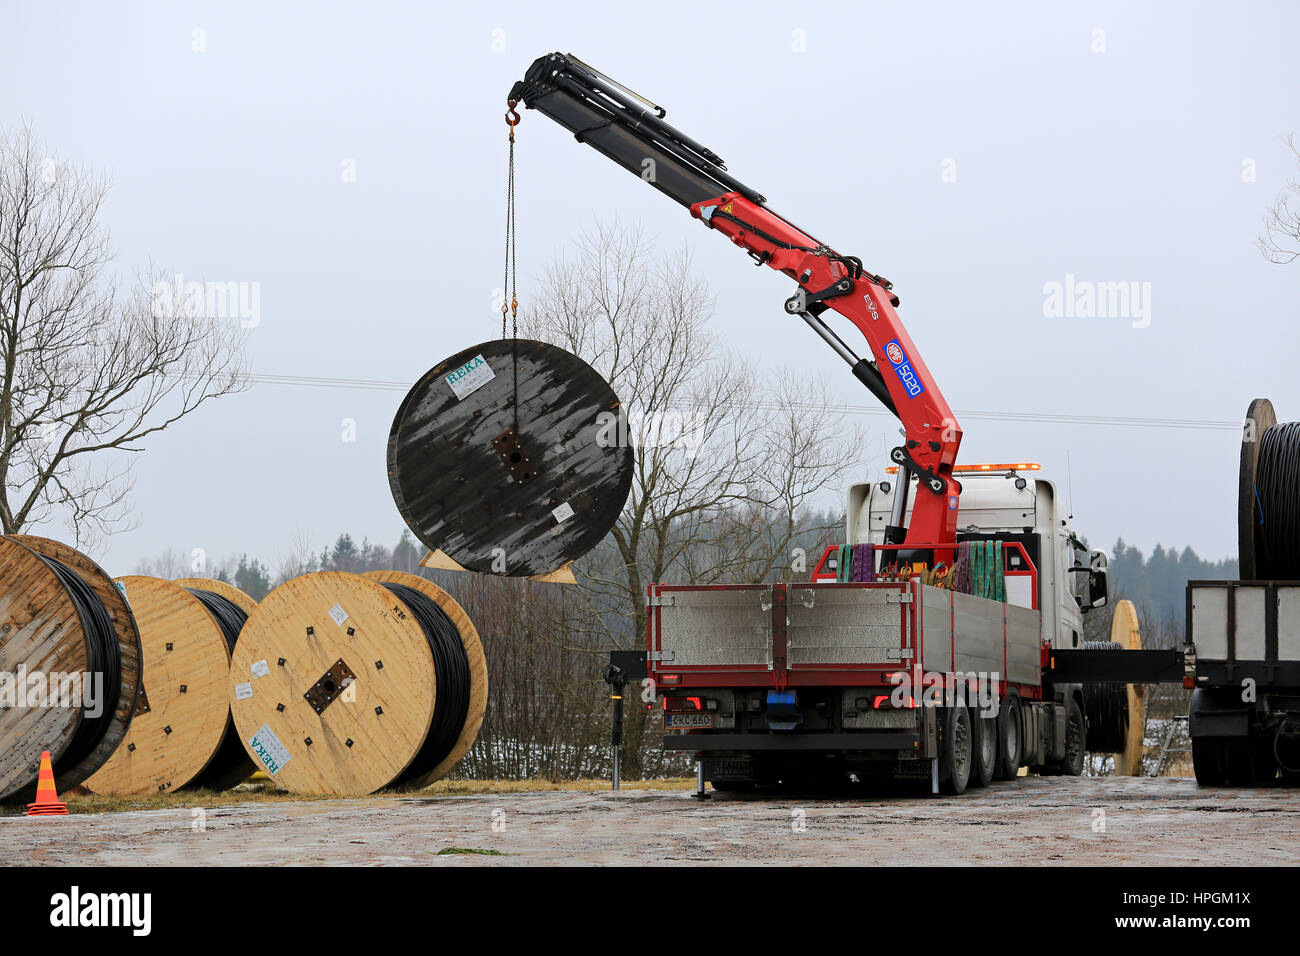 SALO, Finnland - 17. Februar 2017: LKW montierten Kran entlädt macht Kabeltrommeln auf jeden Baustelle. Im Bereich werden Freileitungen repl Stockfoto